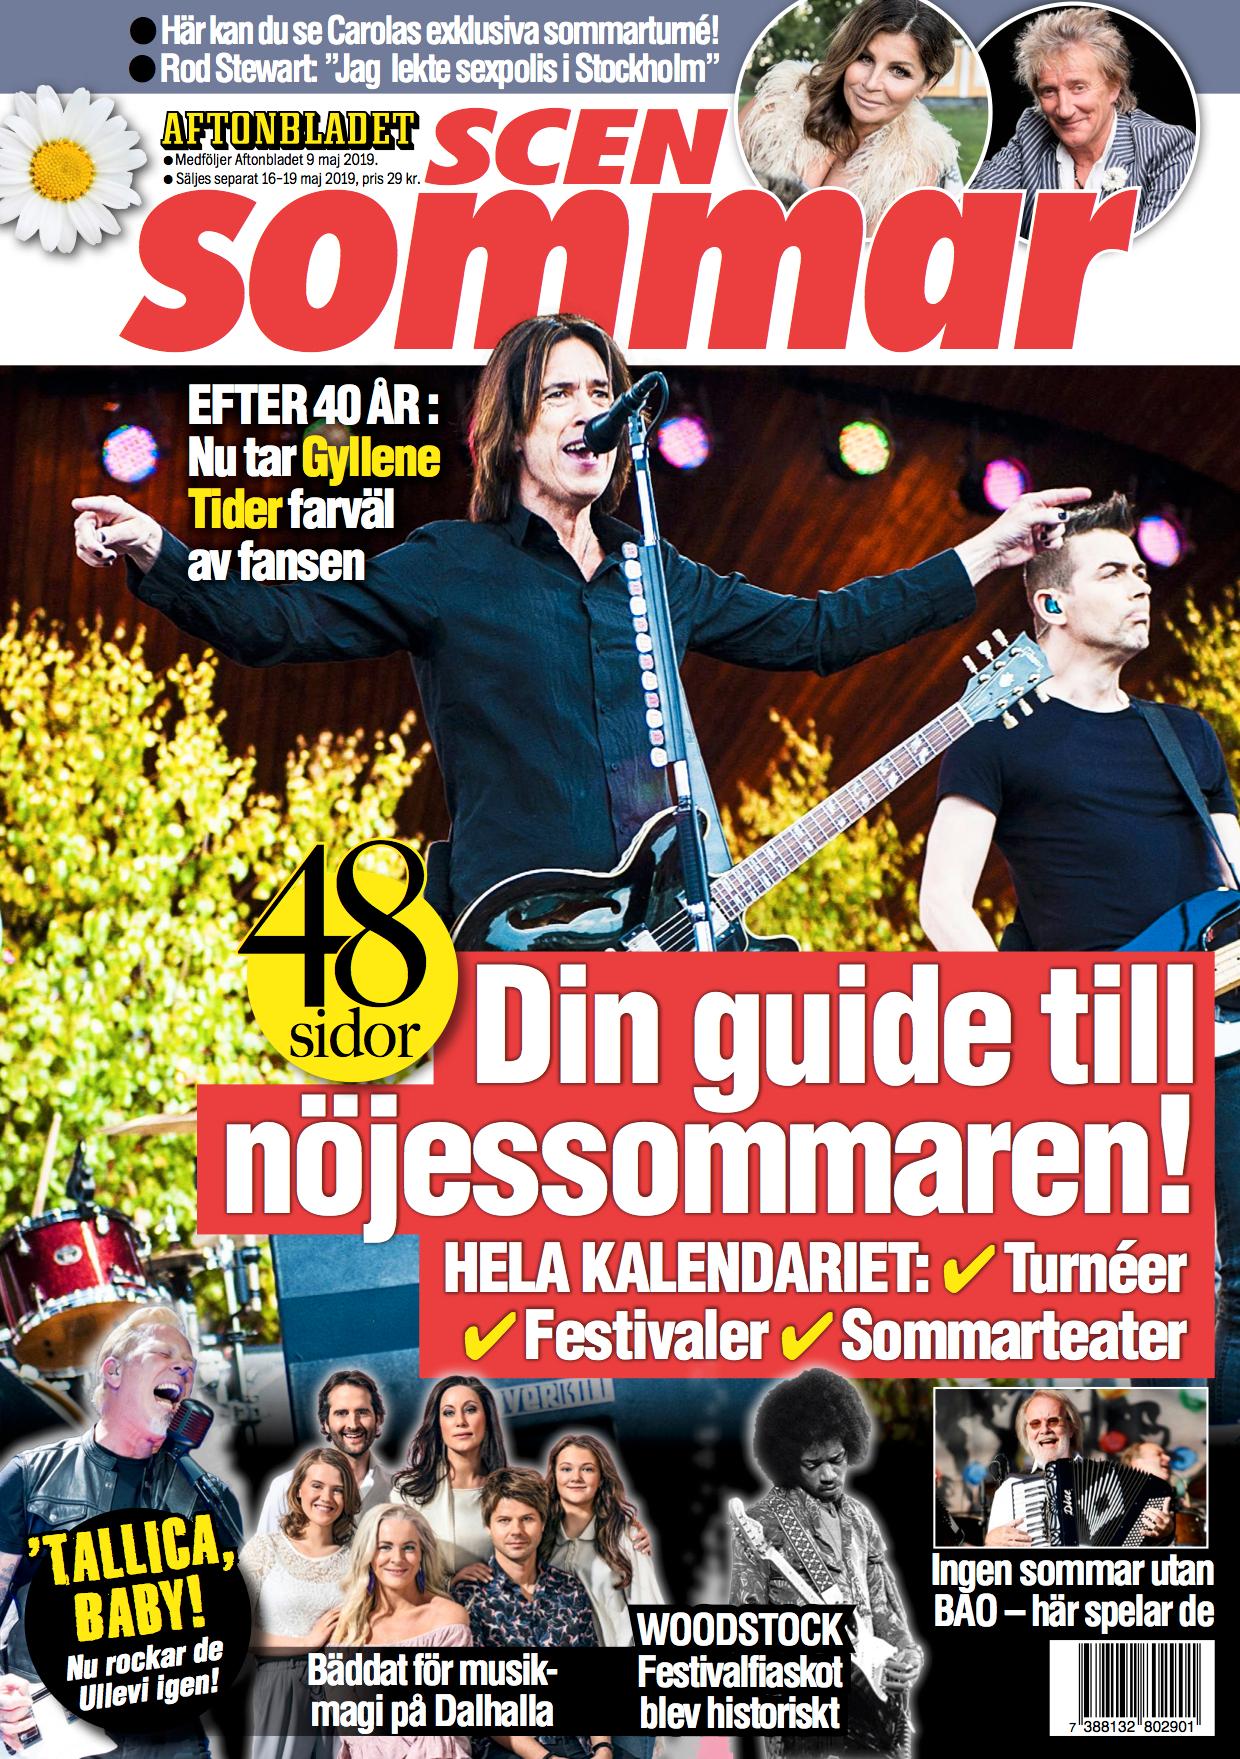 Magasinet Scensommar följer med Aftonbladet 9 maj.